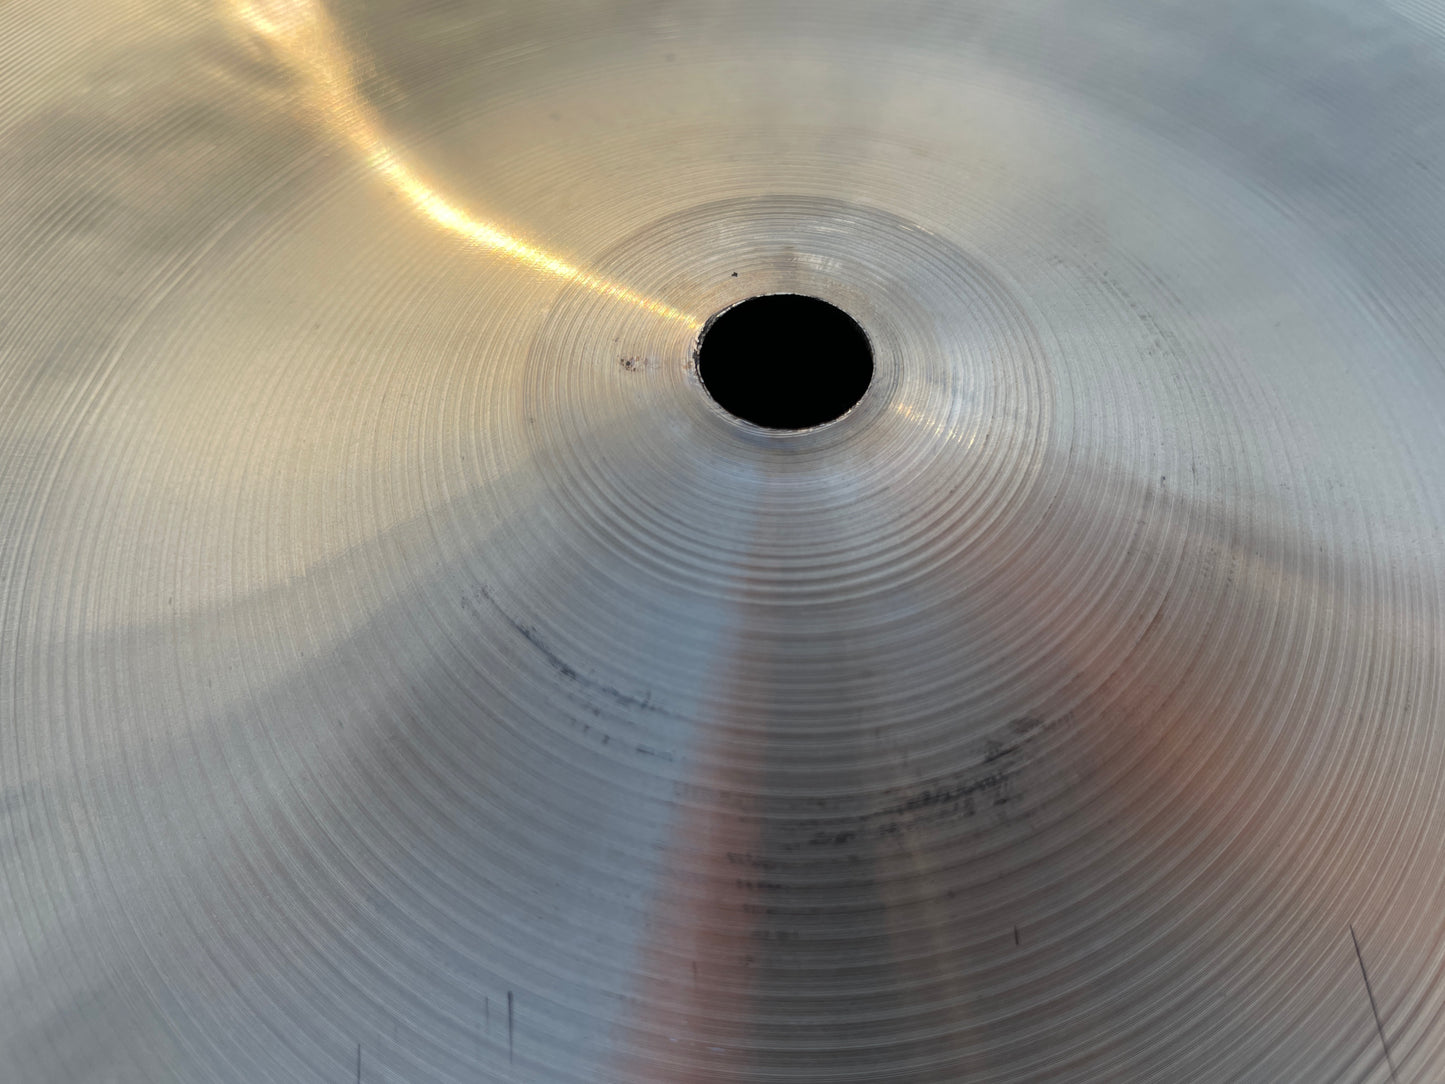 13" Zildjian K Hi-Hat Top Cymbal 916g K0821